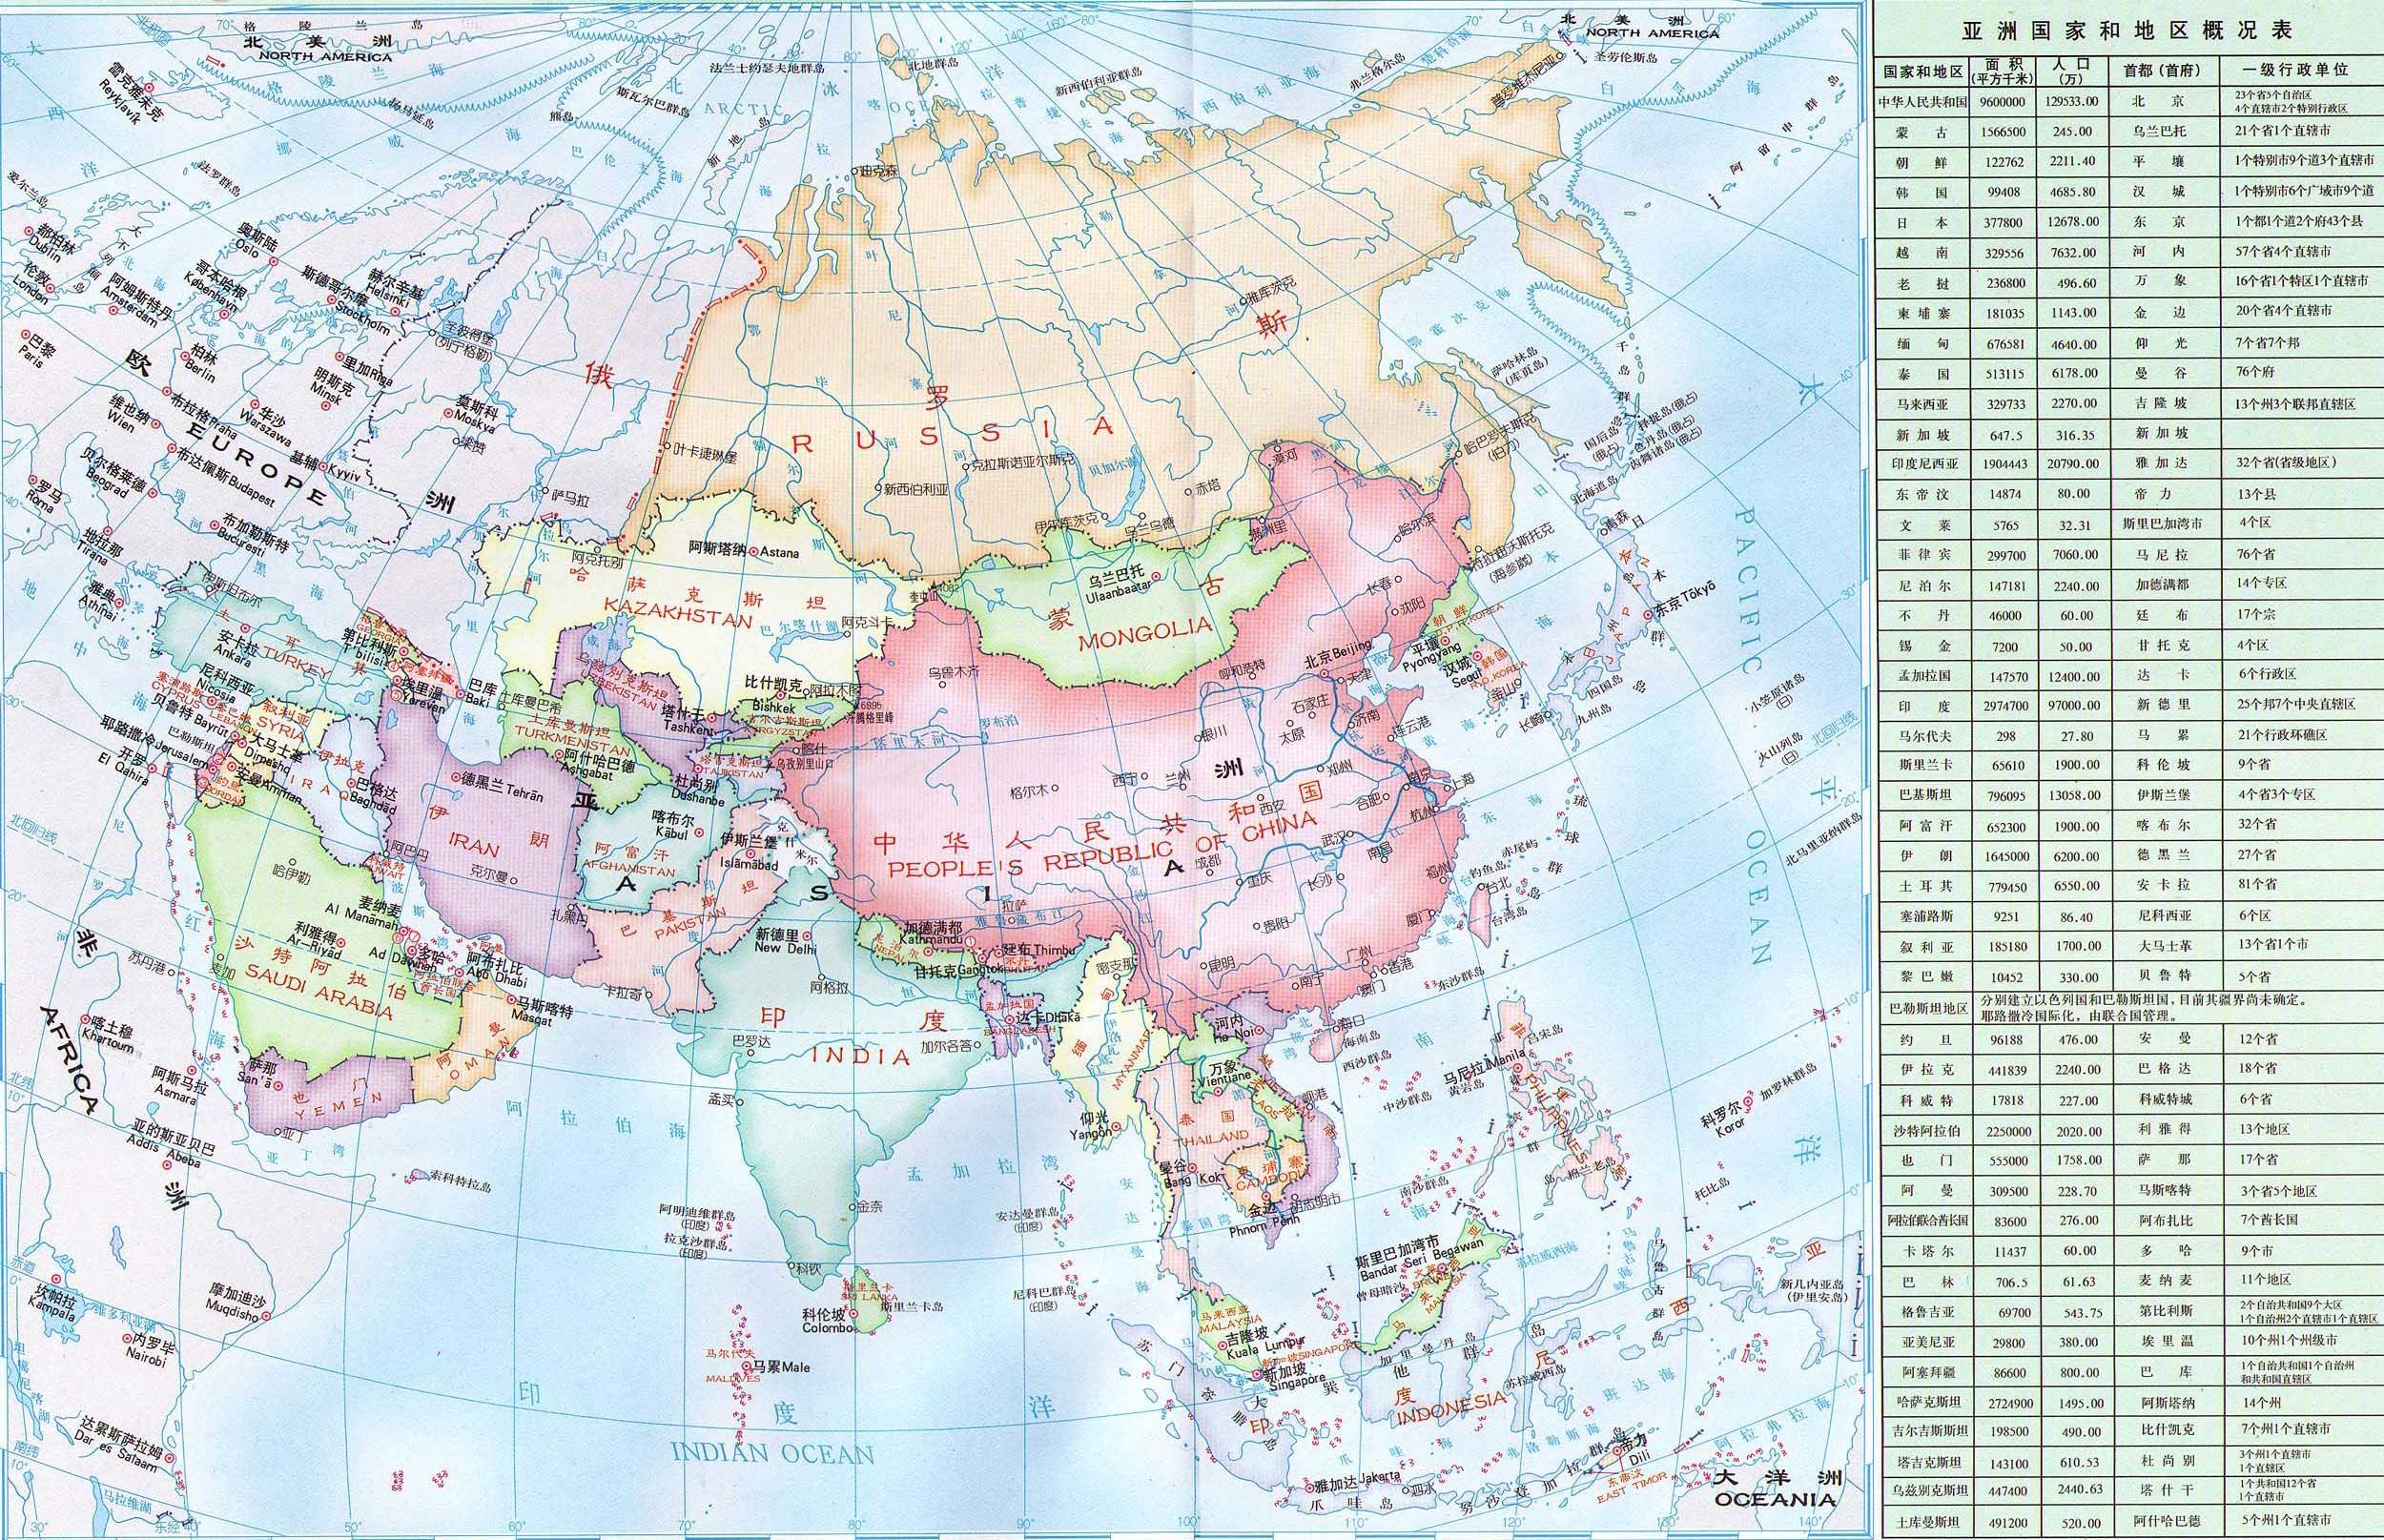 亚洲是世界第一大洲,面积4400万平方千米,约占世界陆地总面积29